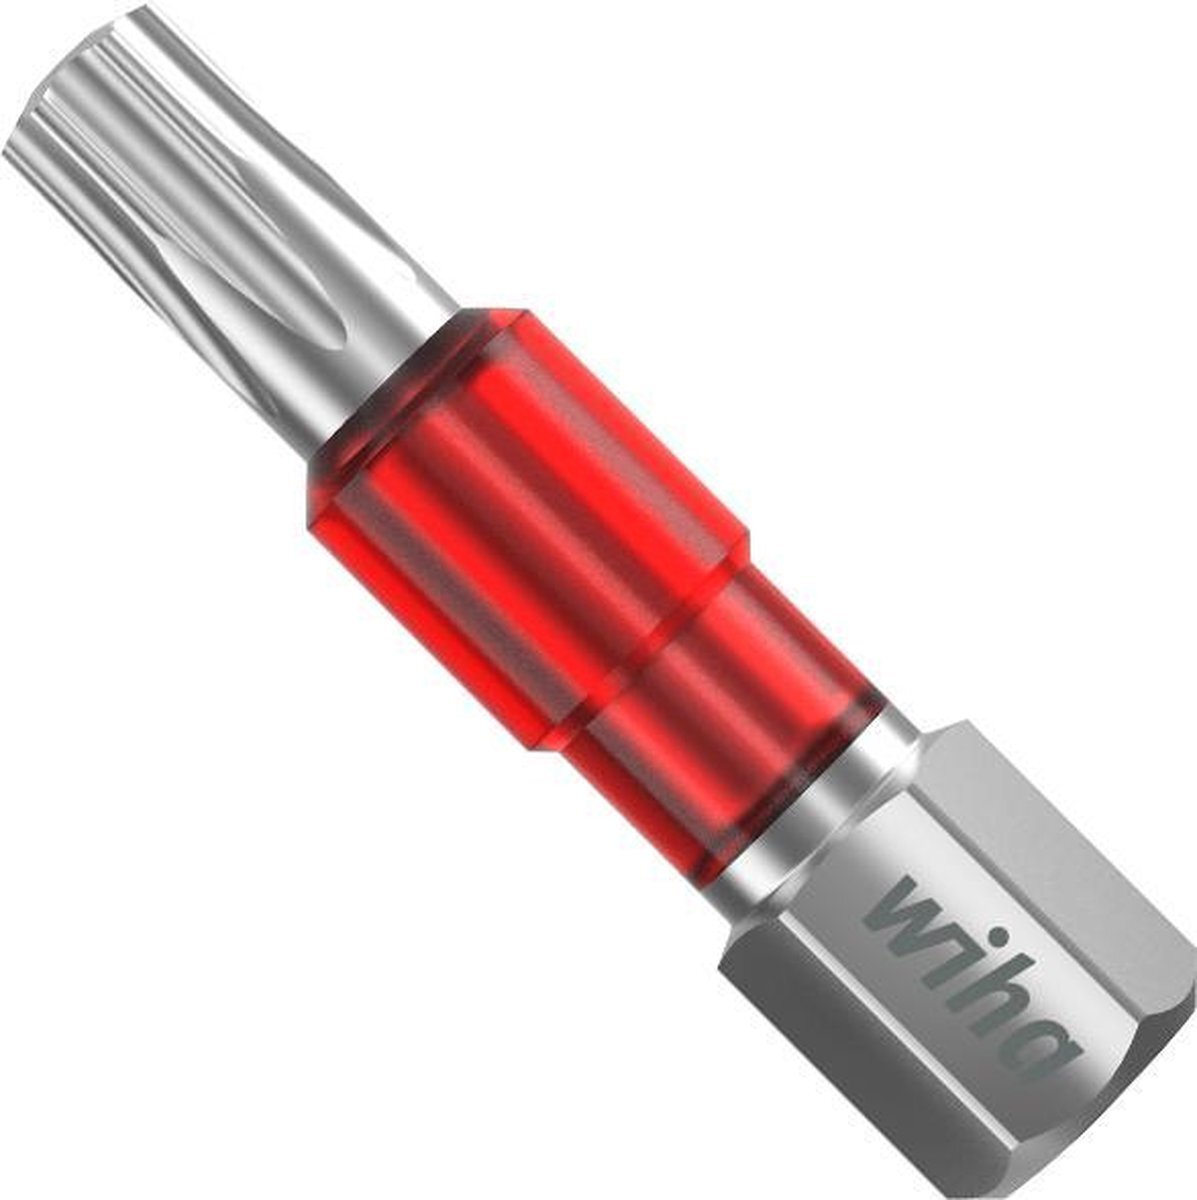 Wiha 42549 Ty-bit 29 mm TORX (T25) 25-delig in Box 1/4" bitset, rood